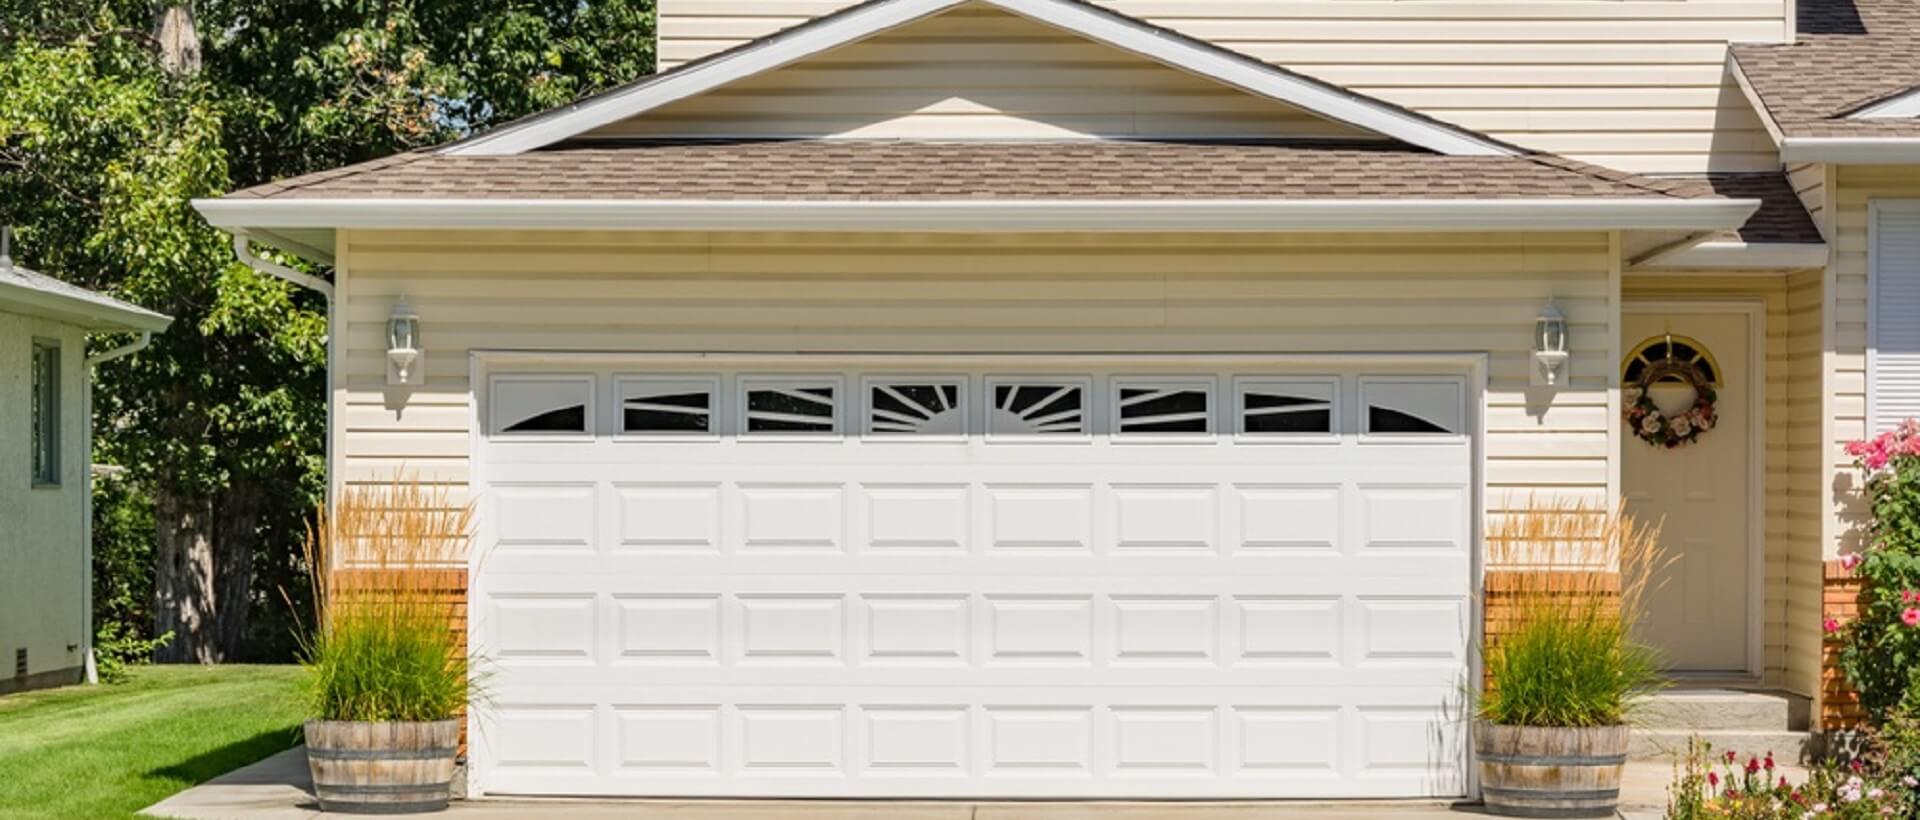 Aurora Garage Doors & Locksmith - Garage doors And locksmith services in CO